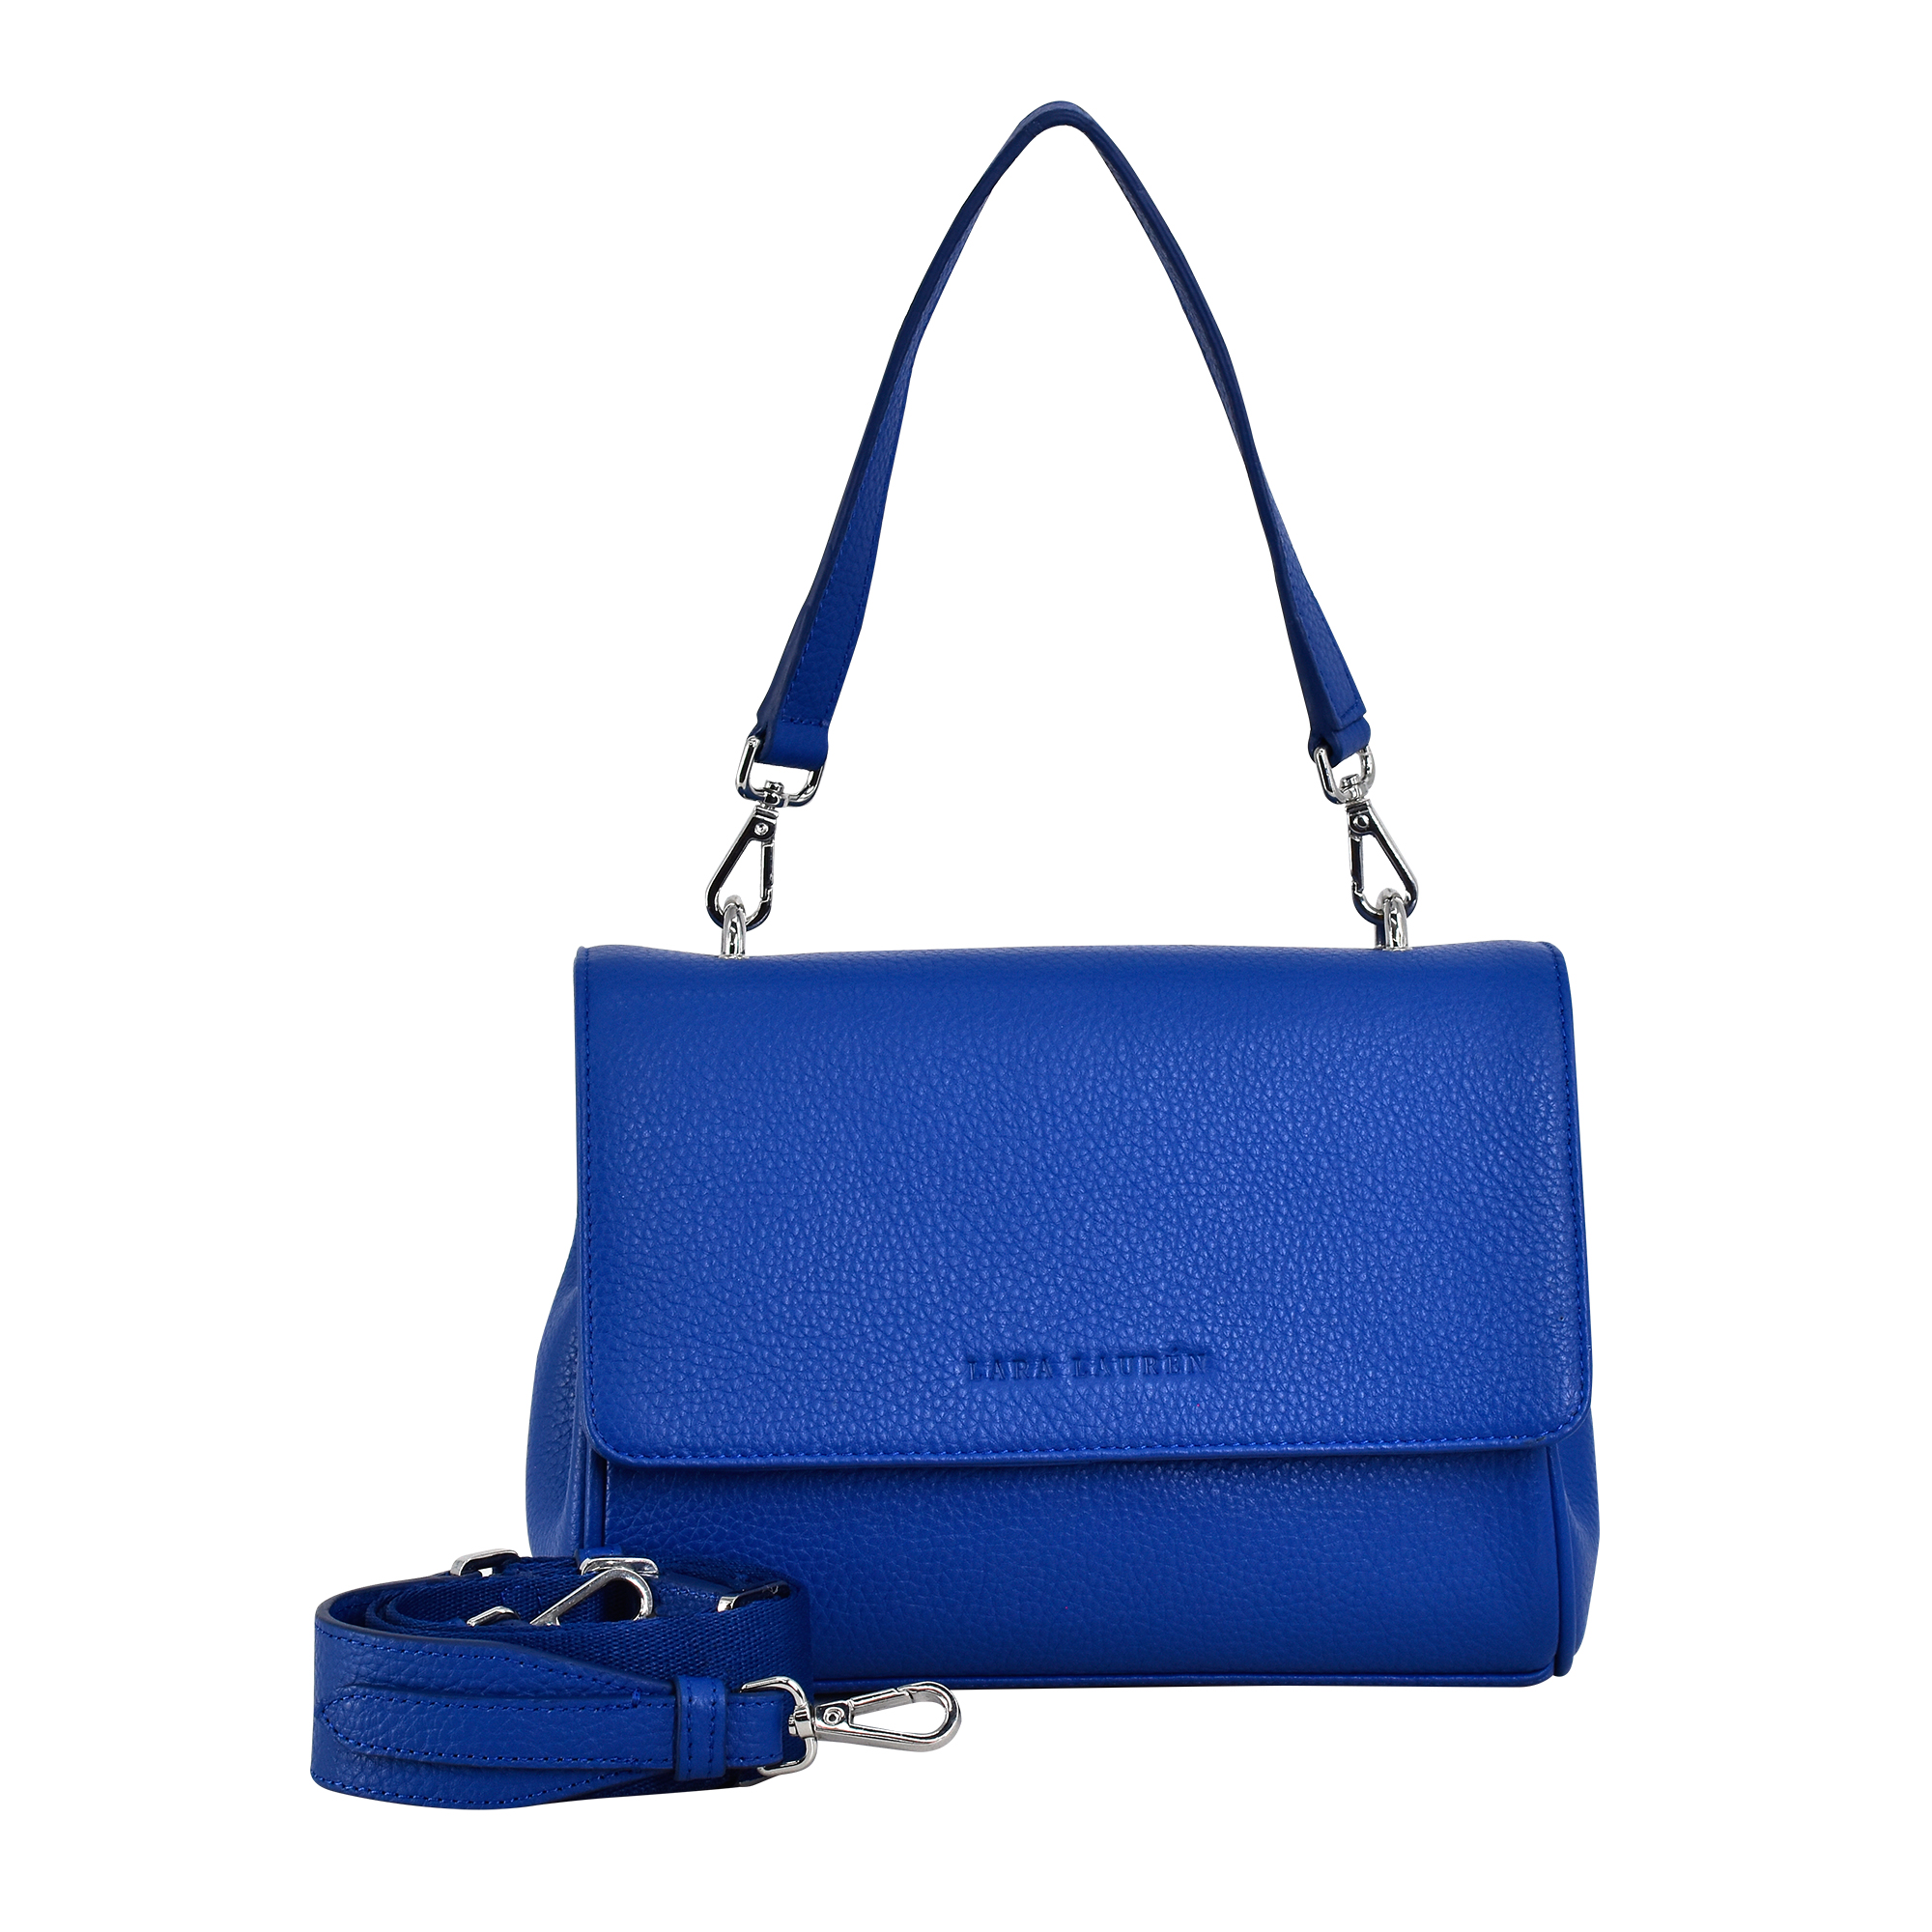 FLAPPY A Crossbody Überschlagtasche mit neuem Nylonriemen, royal blue